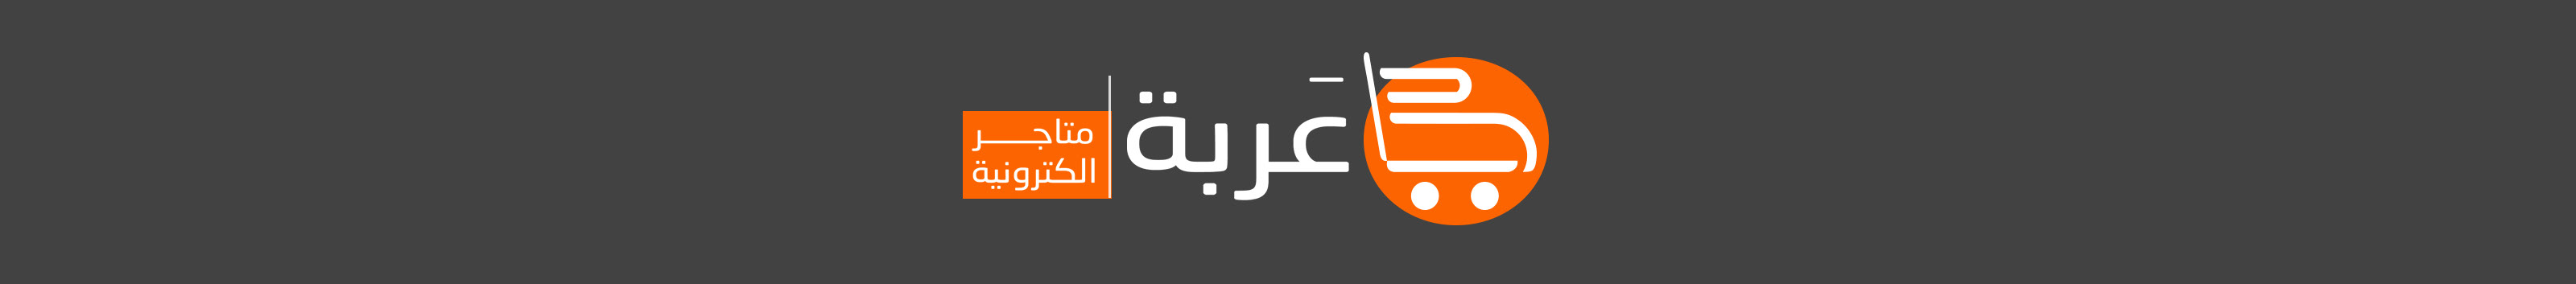 منصه عربة للمتاجر الالكترونية's profile banner